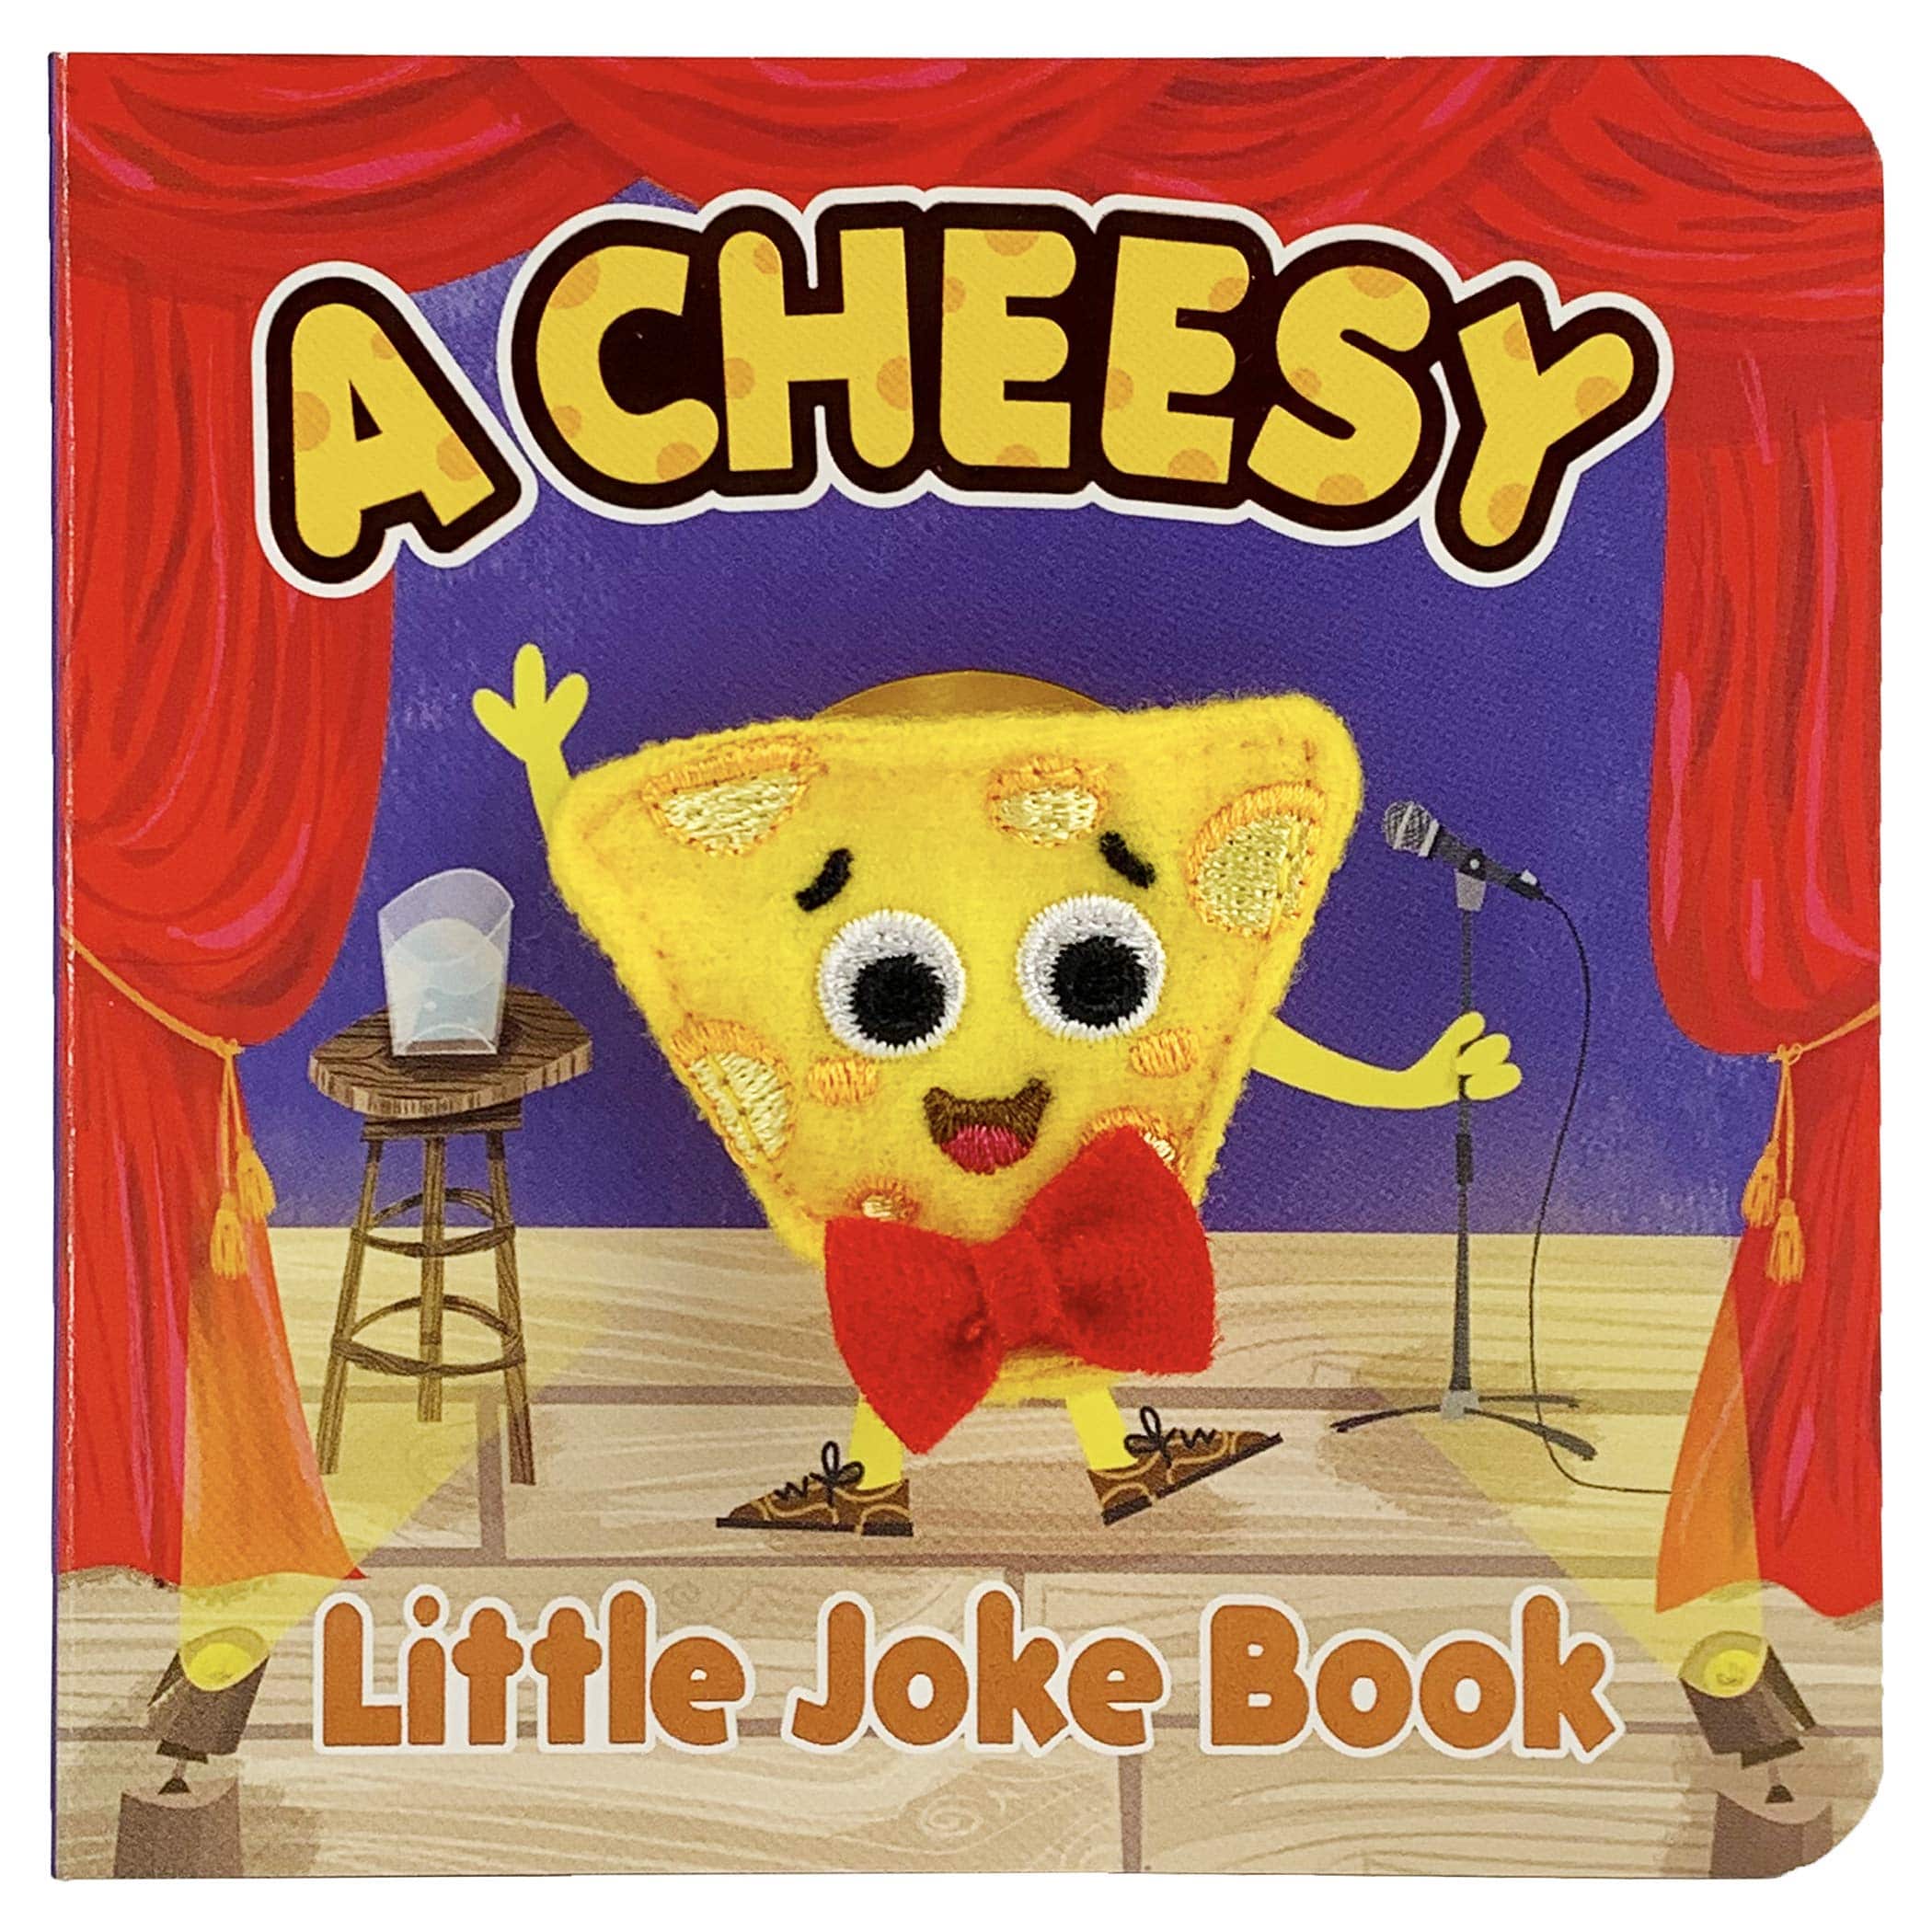 A Cheesy Little Joke Book - Twinkle Twinkle Little One